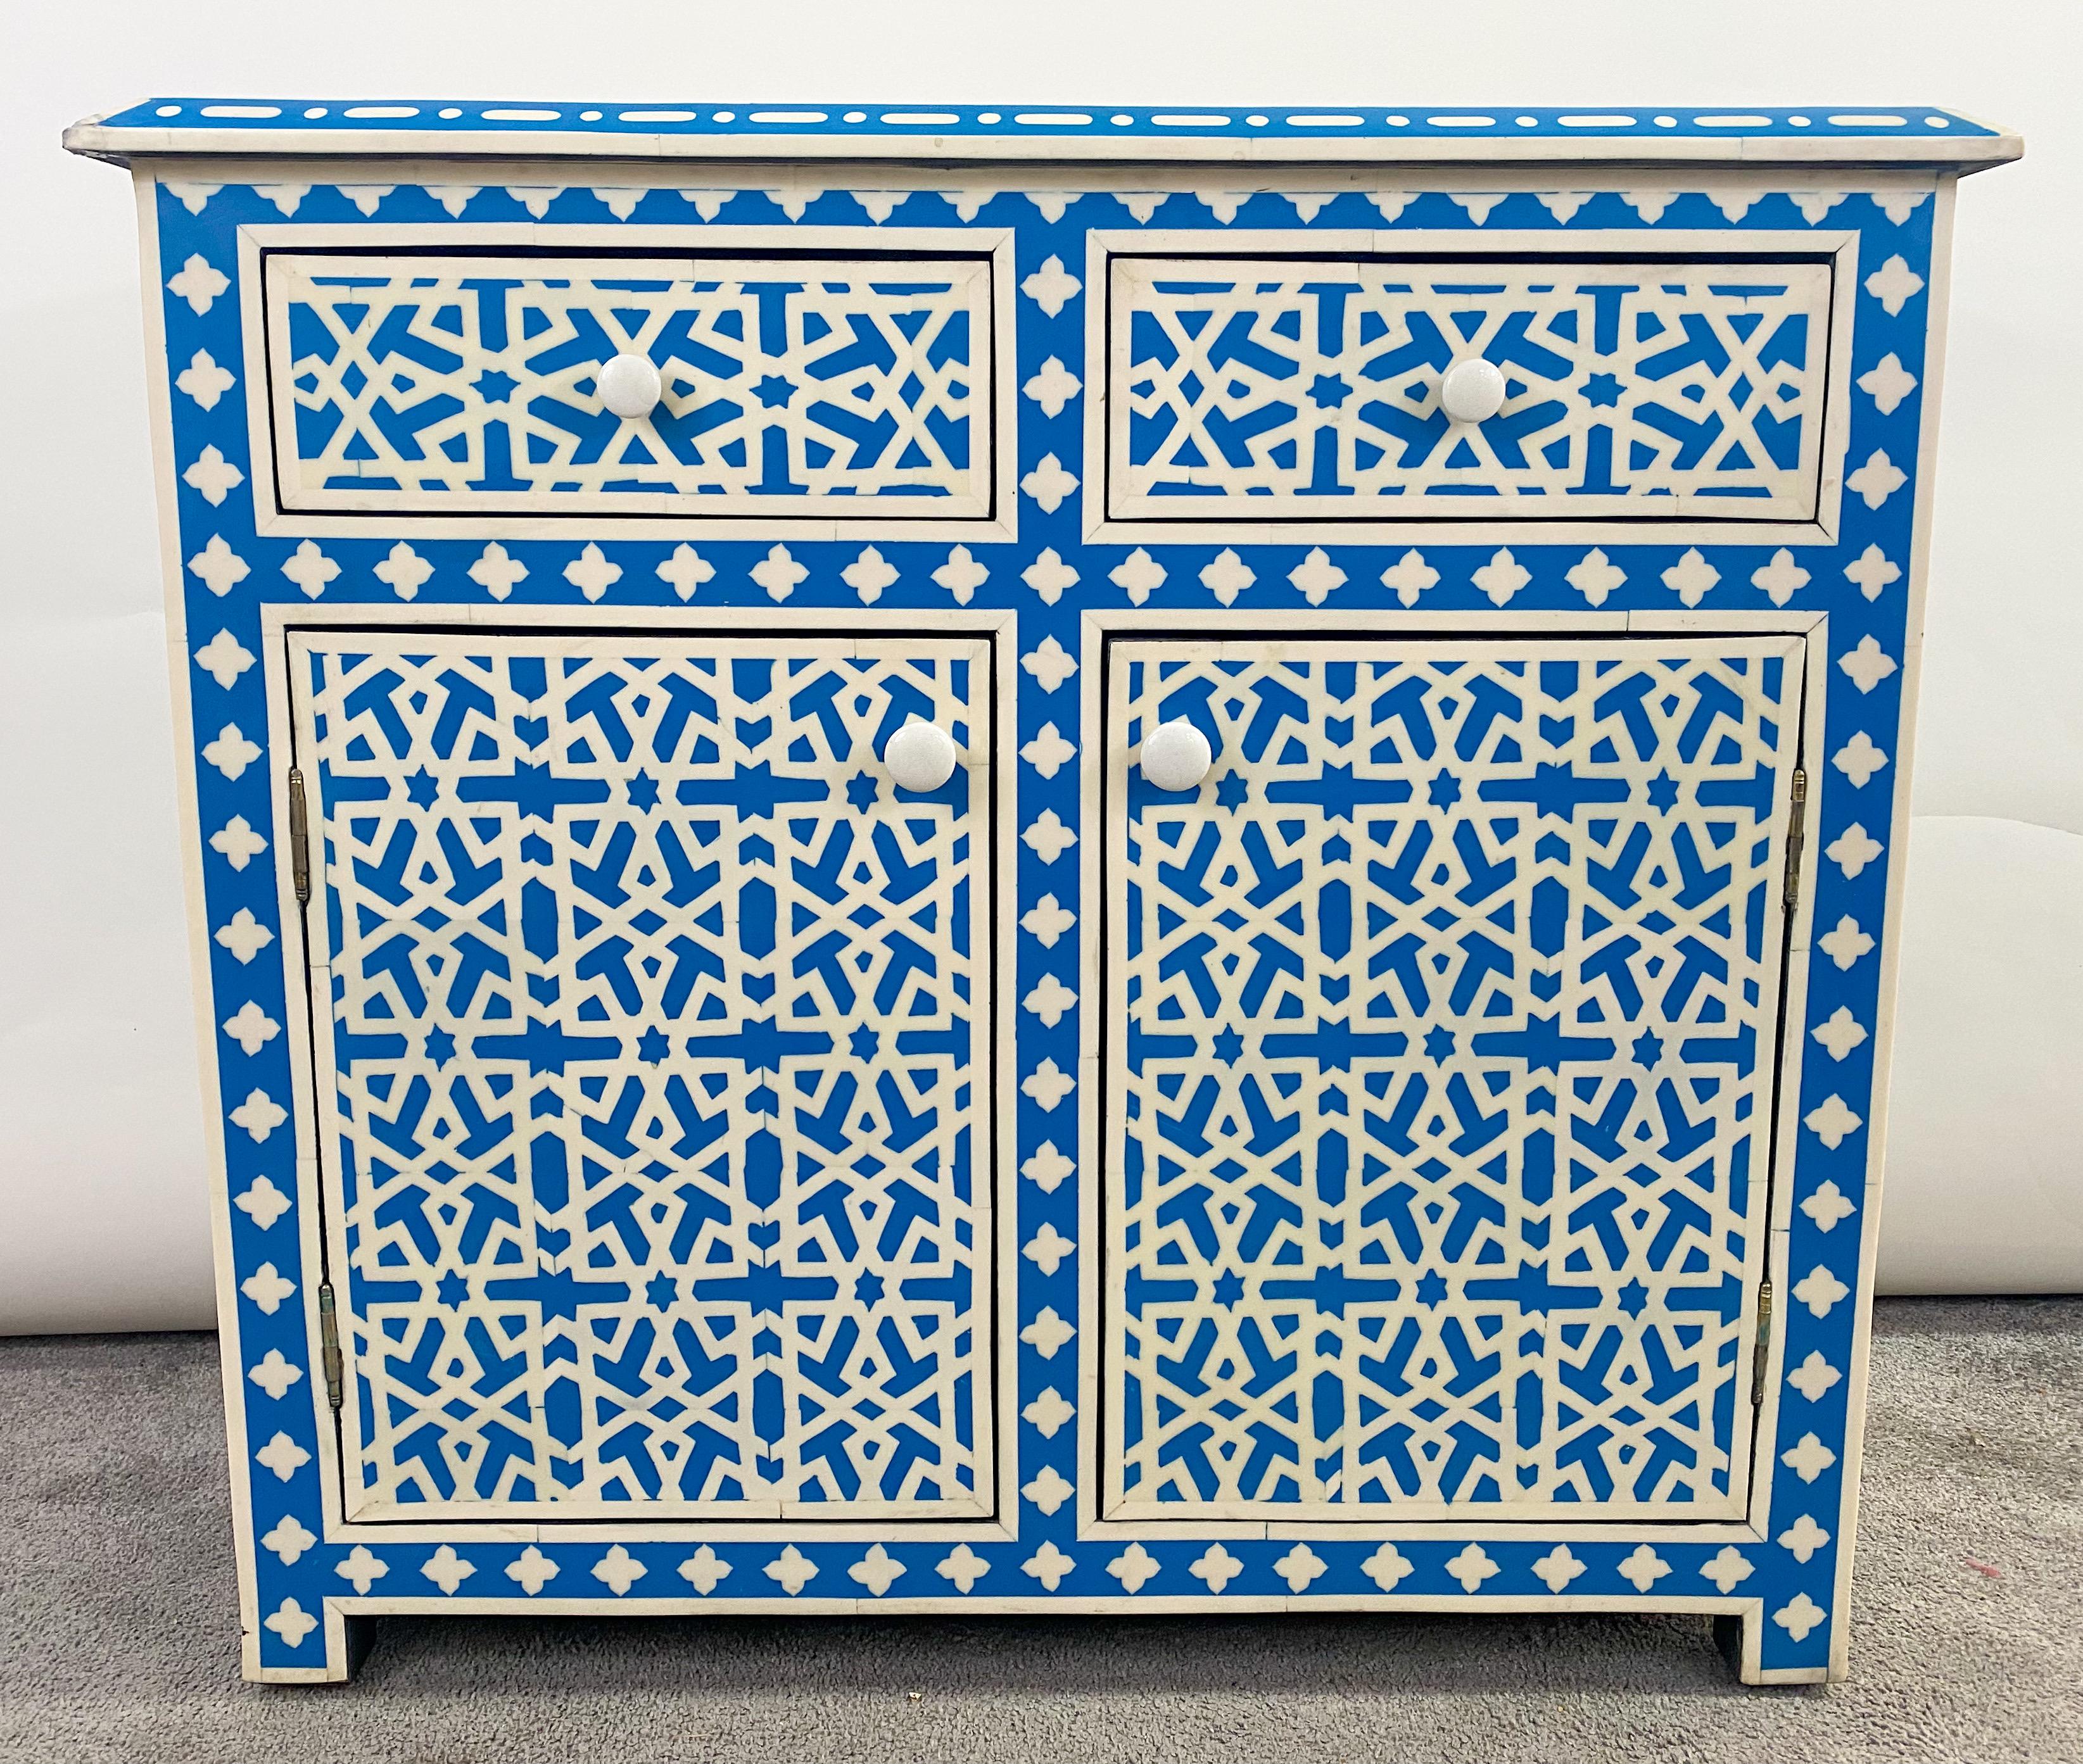 Un superbe meuble ou console de style marocain Boho Chic fait à la main en résine et en bois. Le meuble présente d'exceptionnelles formes géométriques mauresques.  Design/One en blanc et bleu. Les motifs géométriques embellissent le meuble sur tous